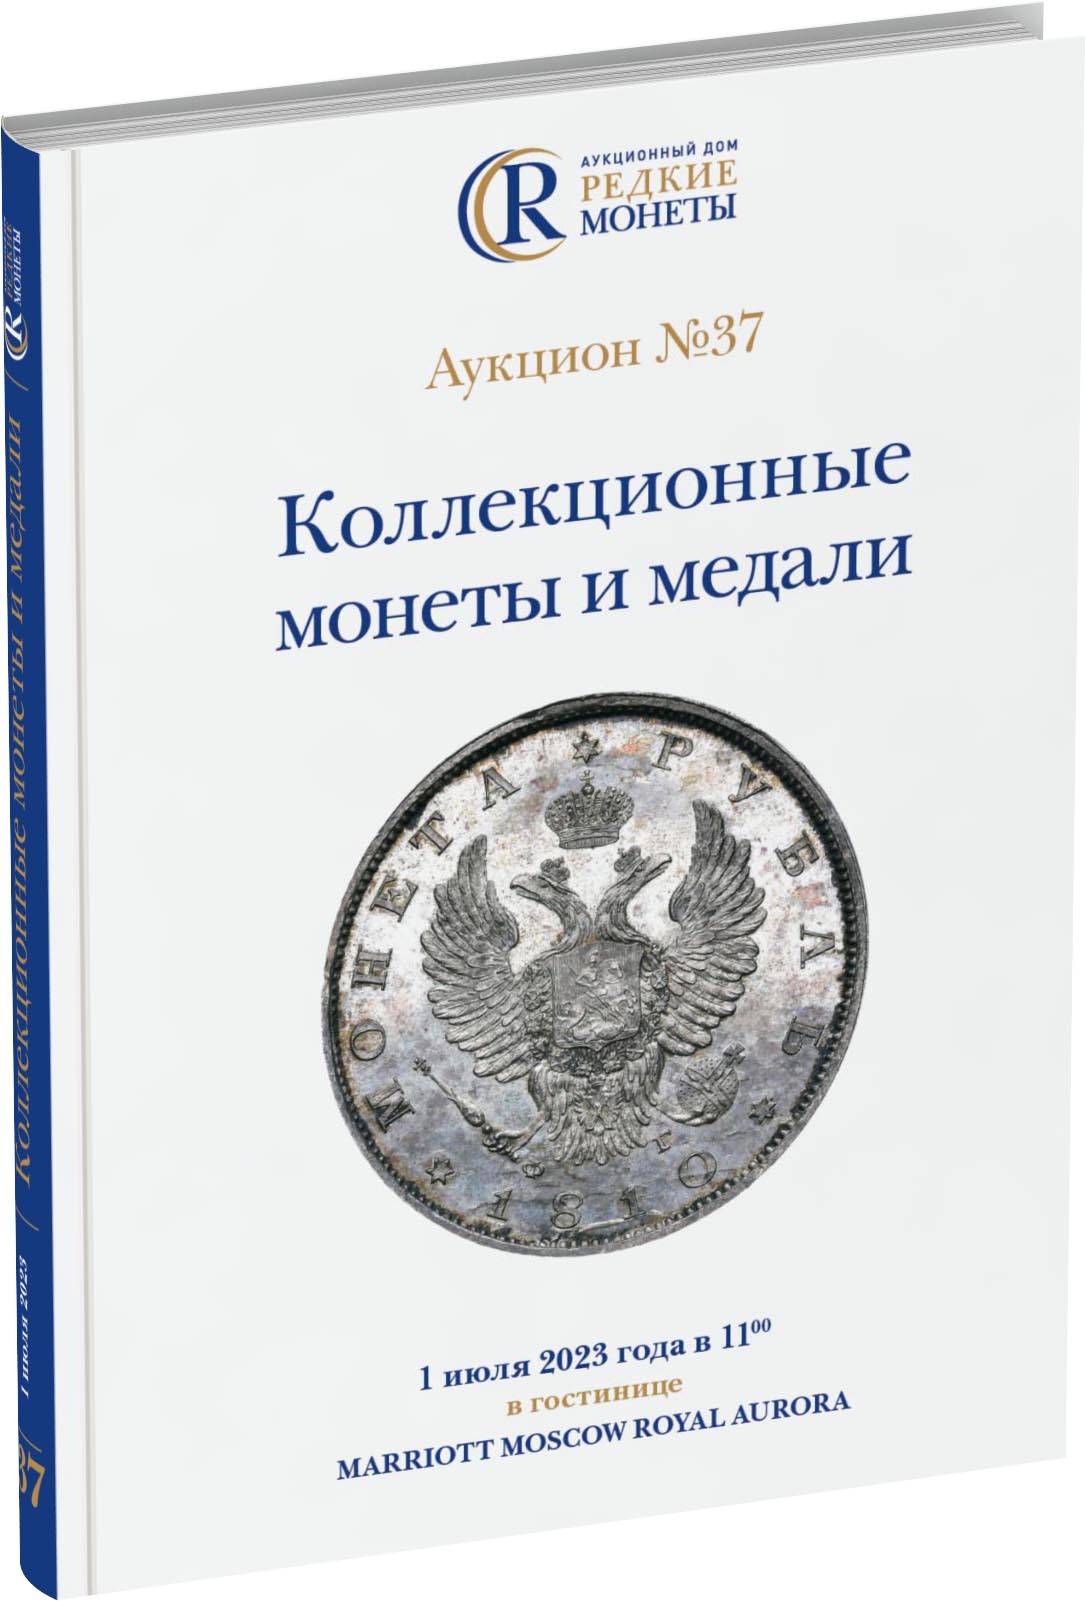 Обложка издания Каталог аукциона №37 «Коллекционные монеты и медали»